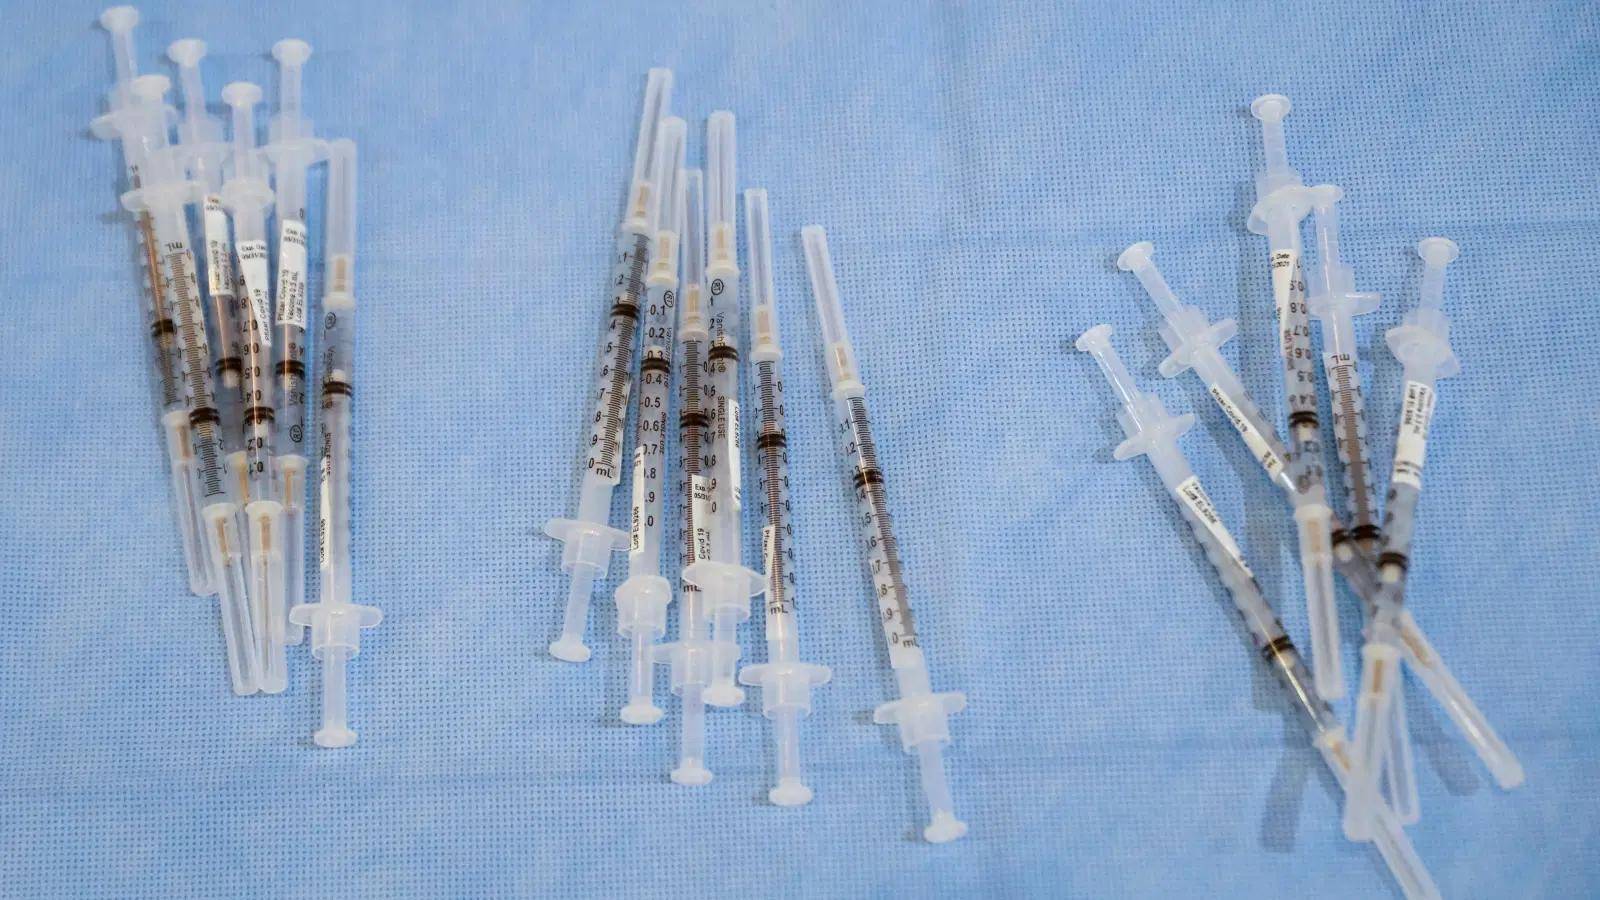 专家表示,仅注射新冠疫苗,全球就需要多达80亿至100亿支注射器